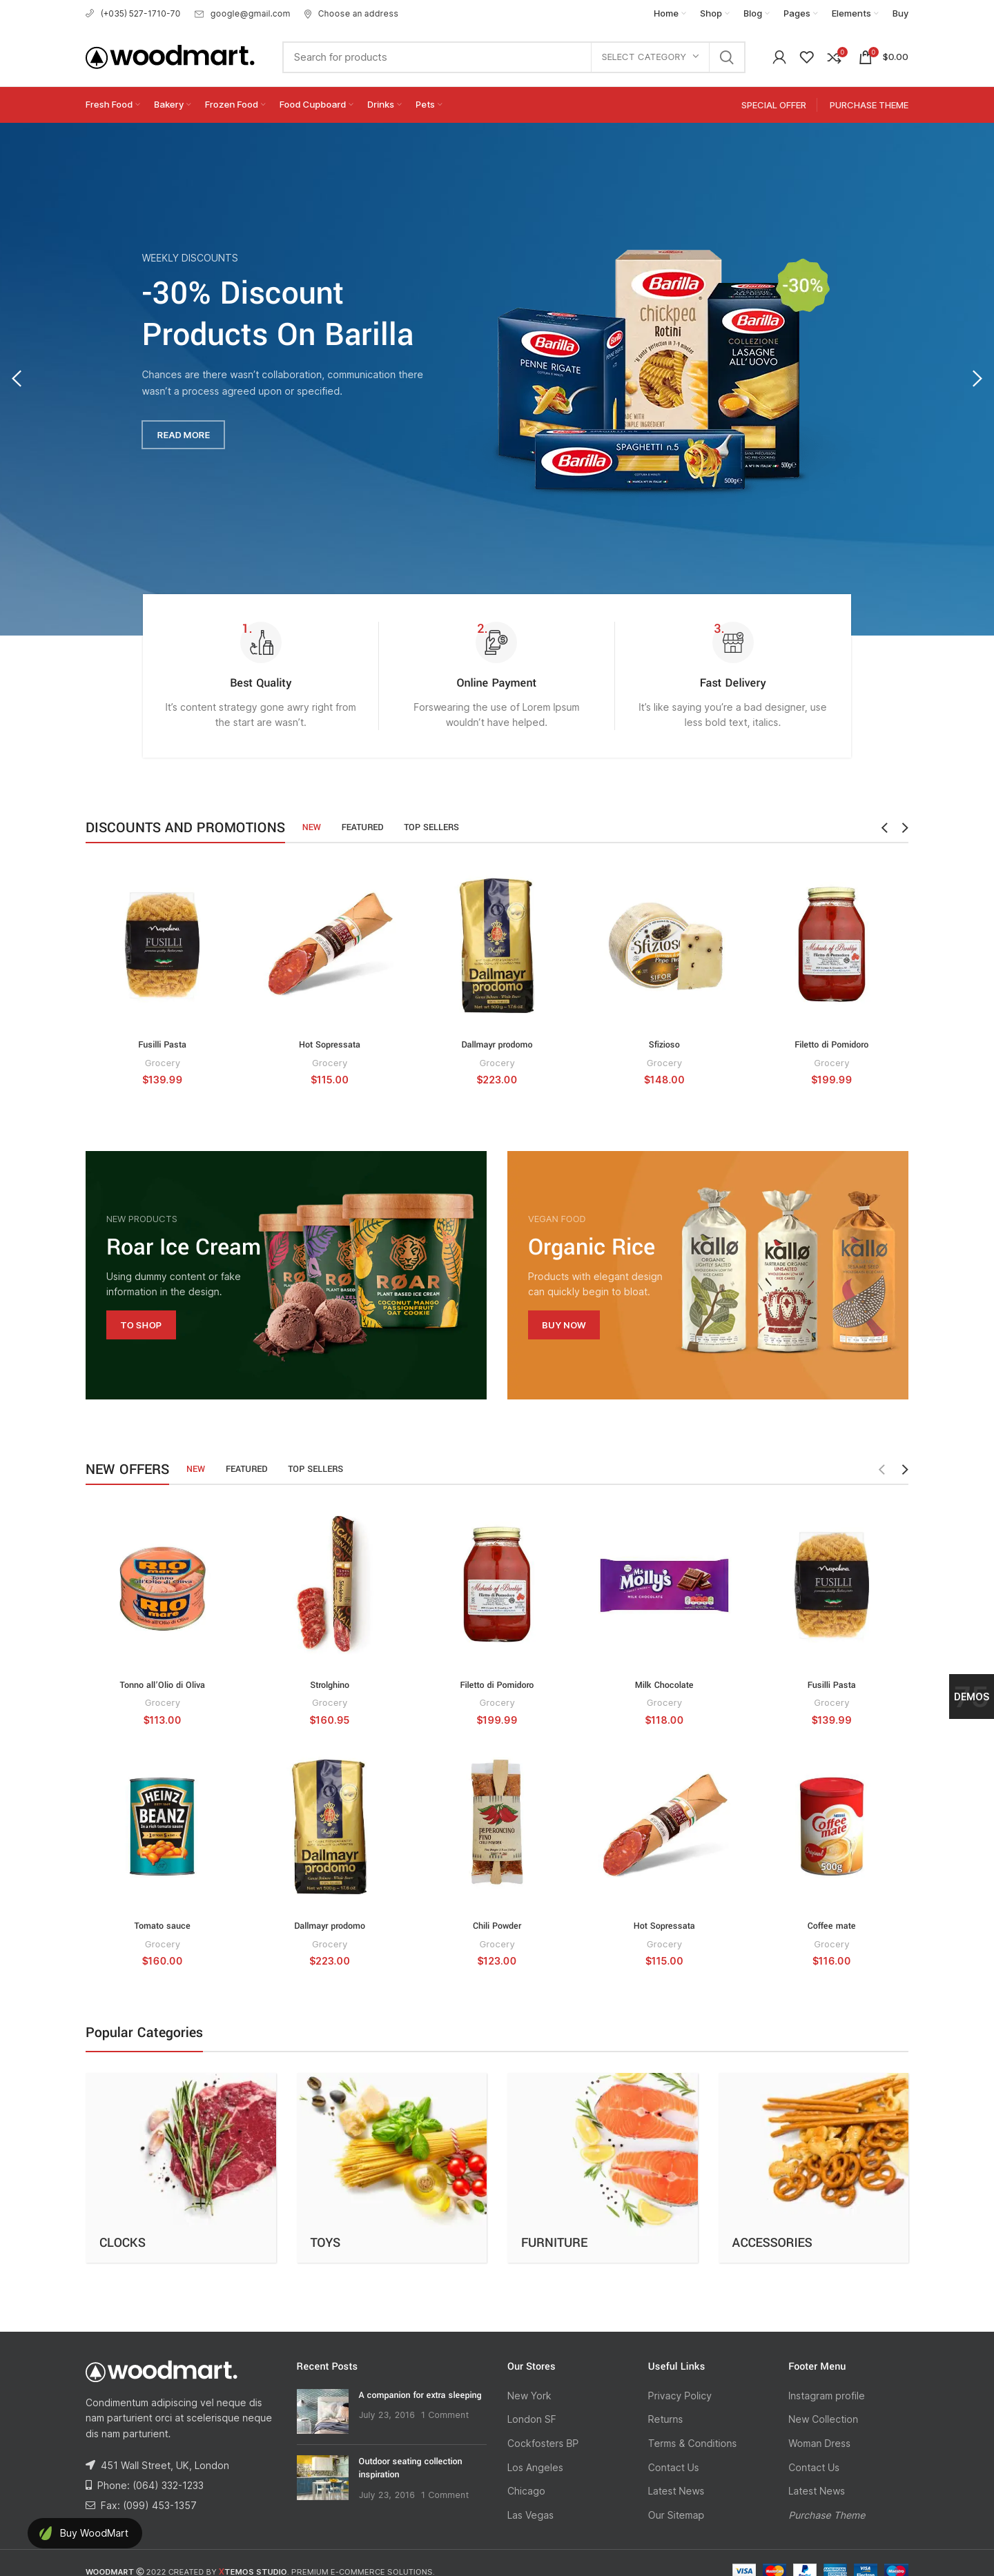 Mẫu giao diện website Cửa hàng tiện lợi Woodmart